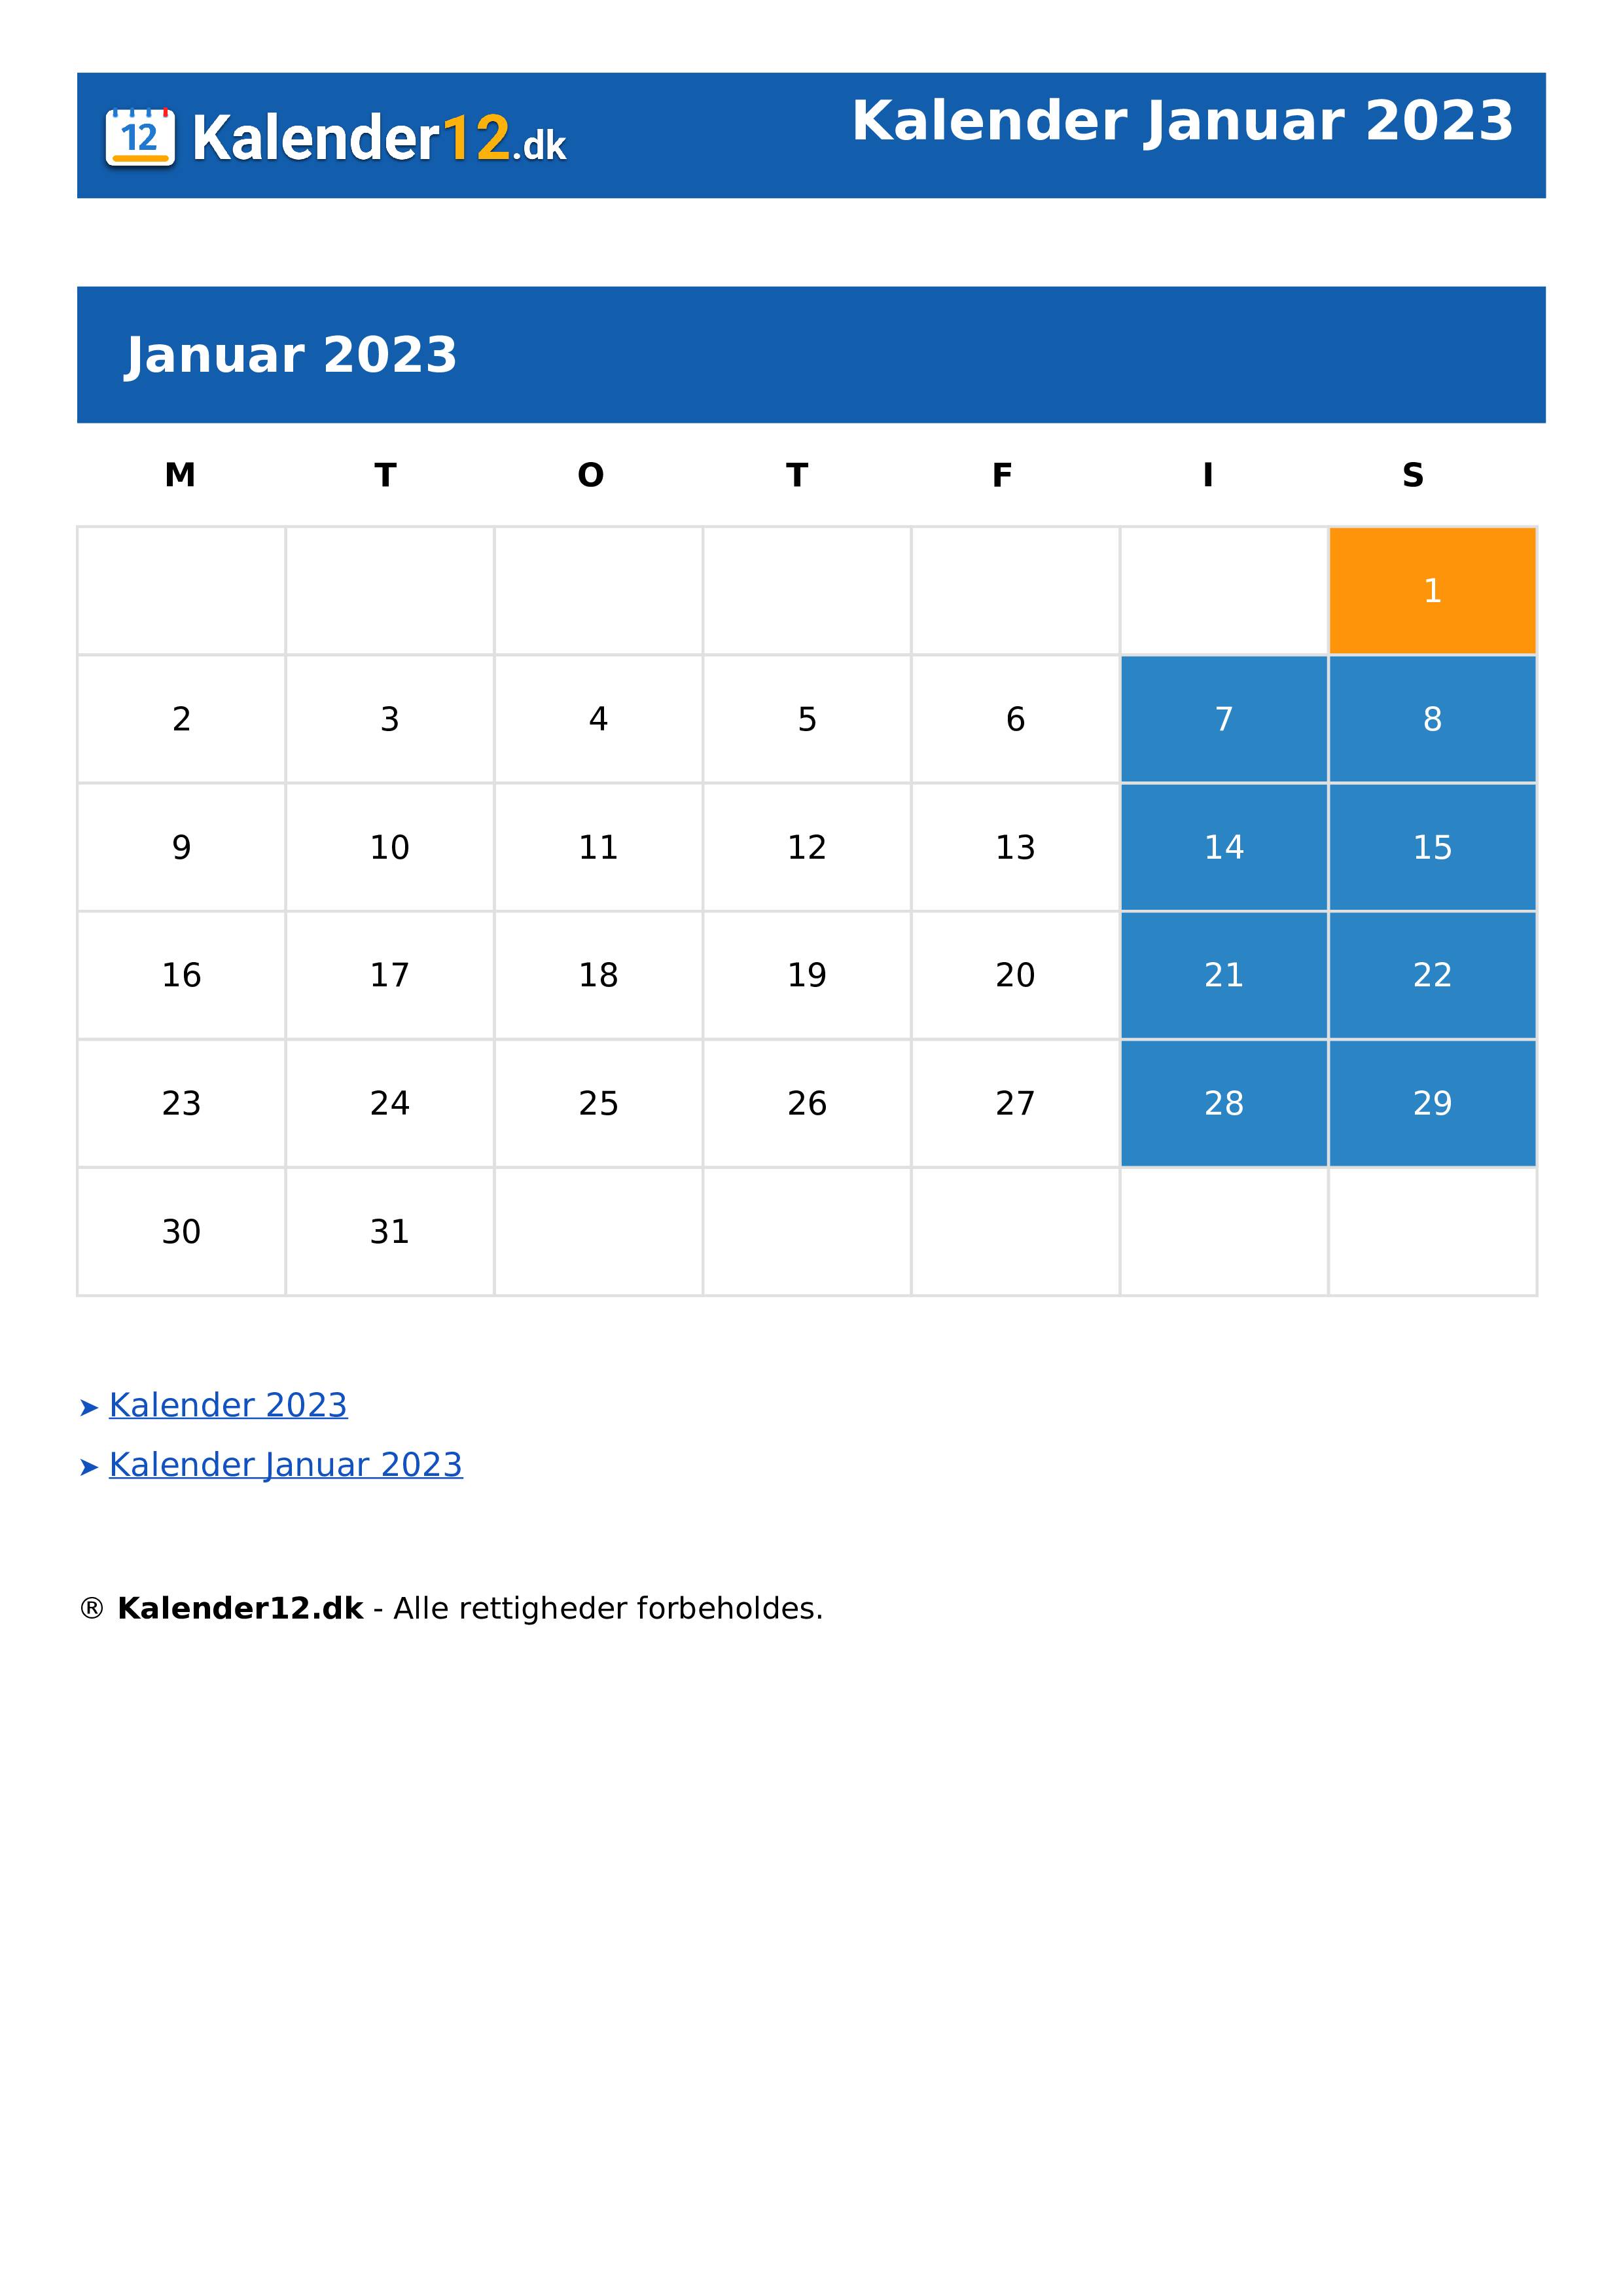 Calendar Januar 2023